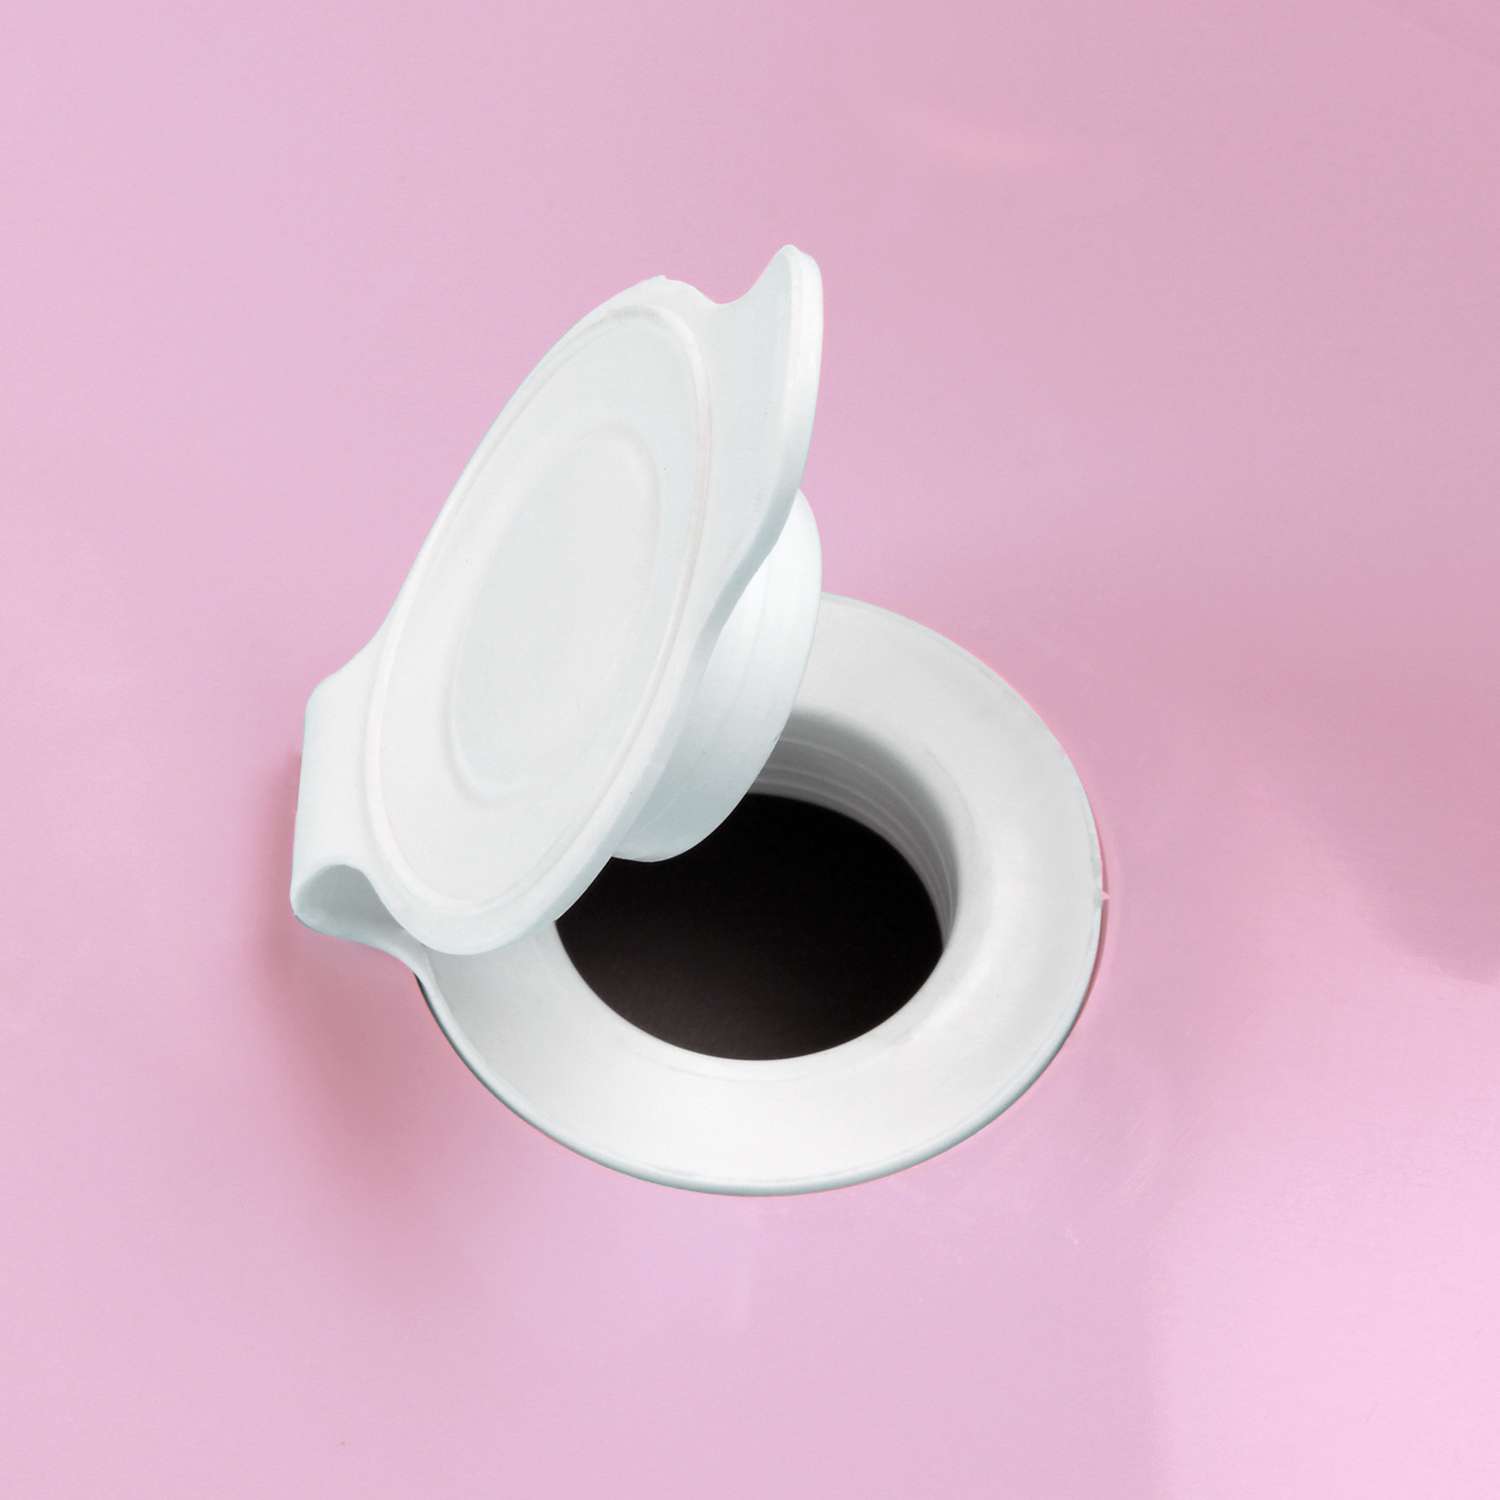 Ванна Пластишка с аппликацией и клапаном для слива воды розовая - фото 4